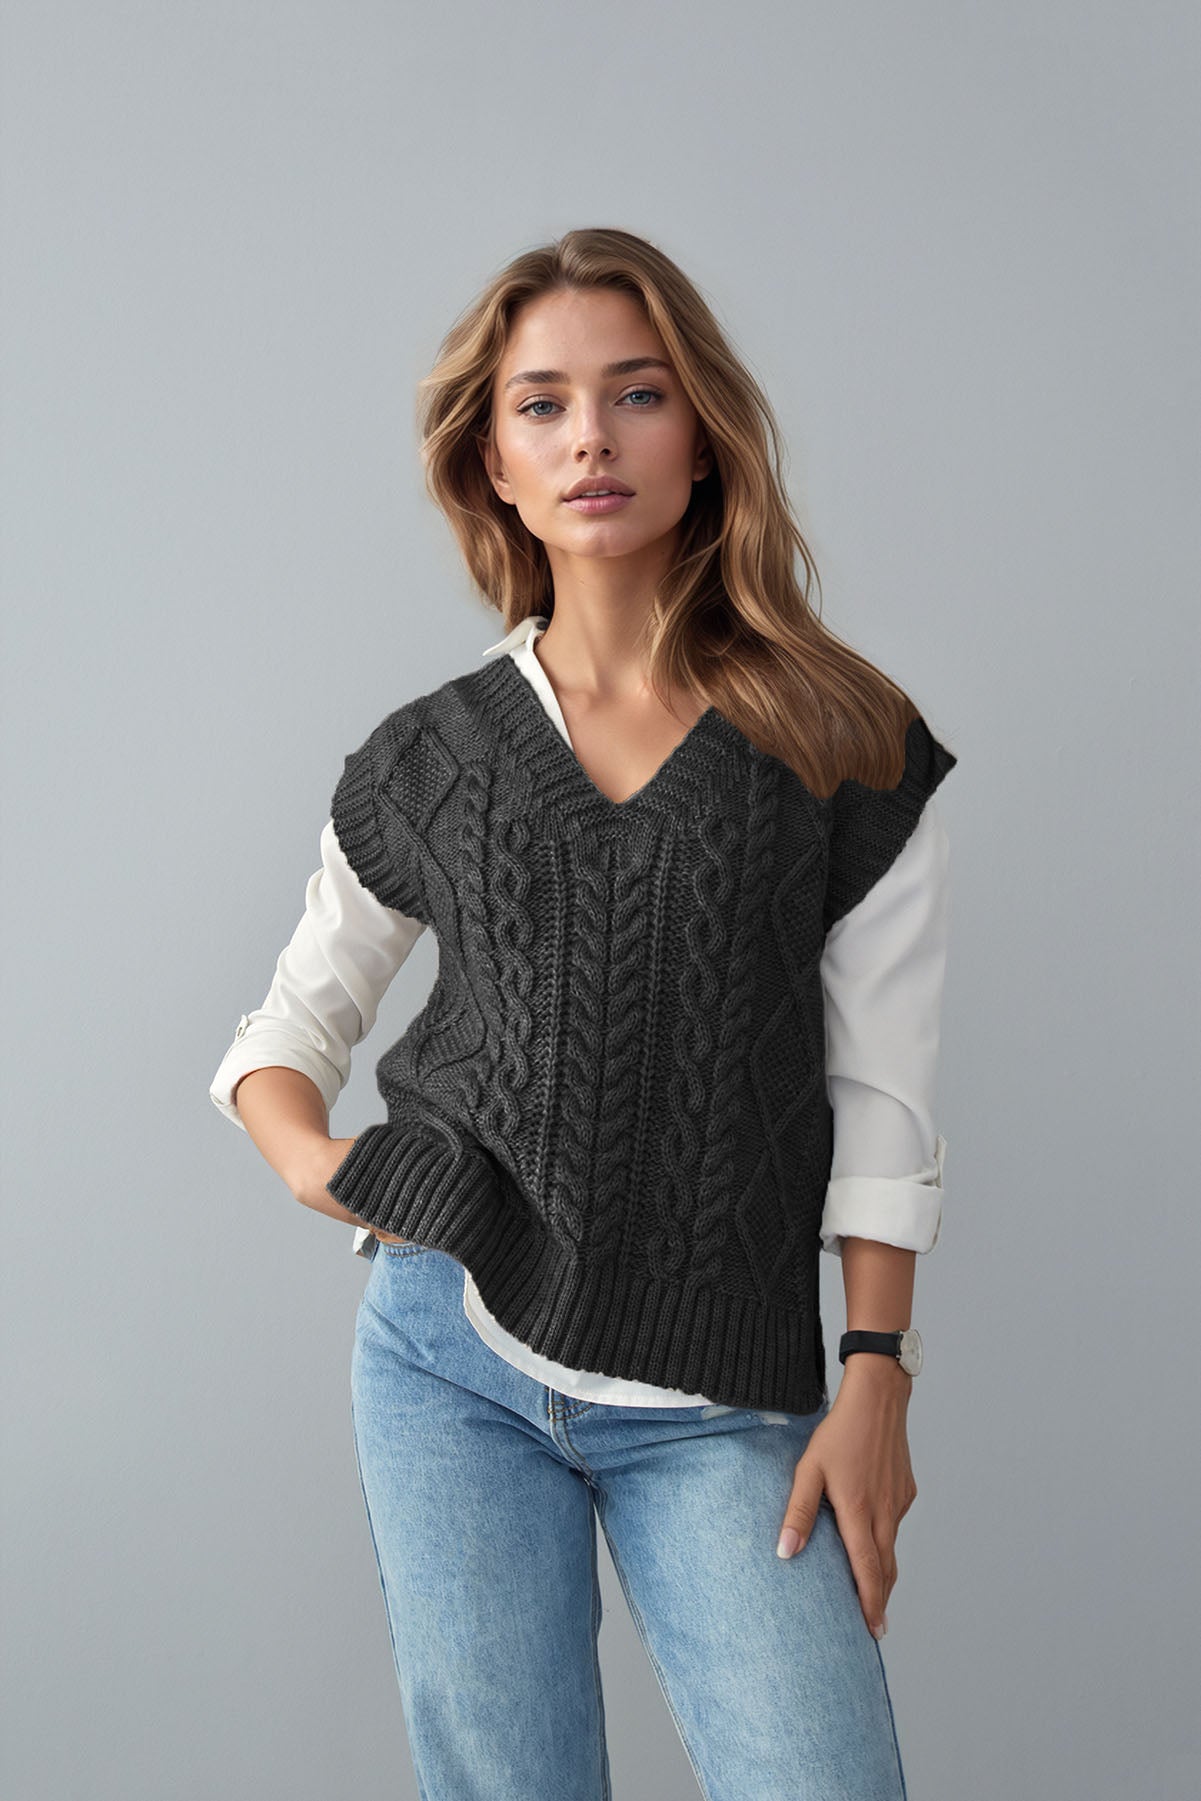 Stylish Cable-Knit Ribbed V-Neck Sweater Vest